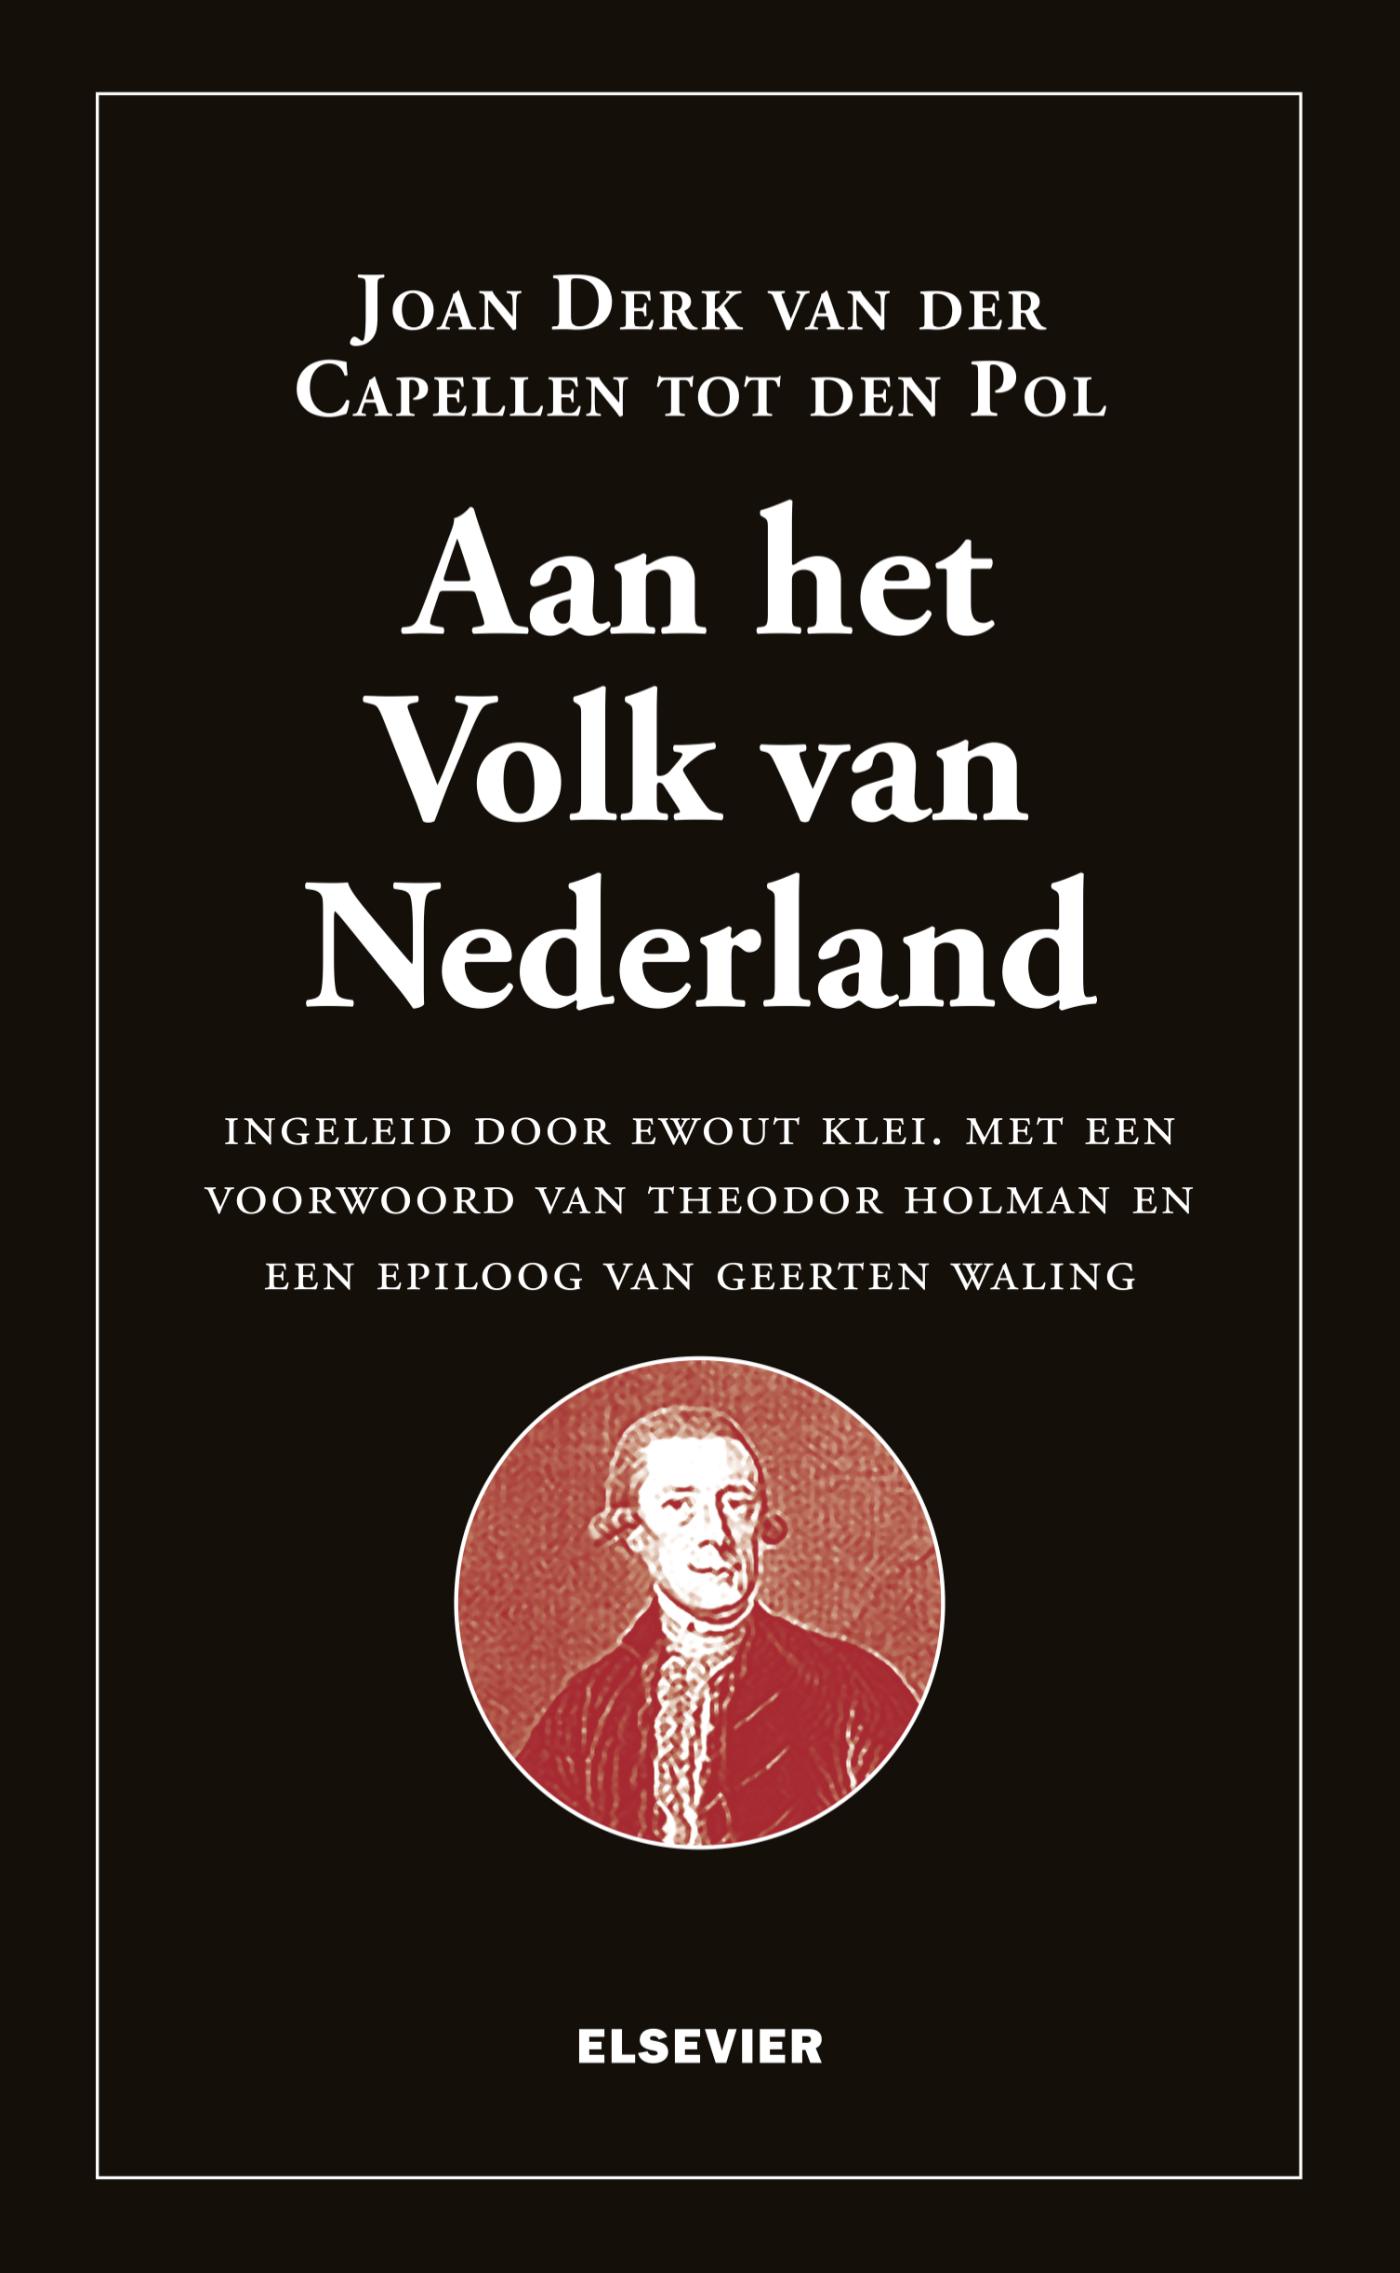 Aan het volk van Nederland! (Ebook)